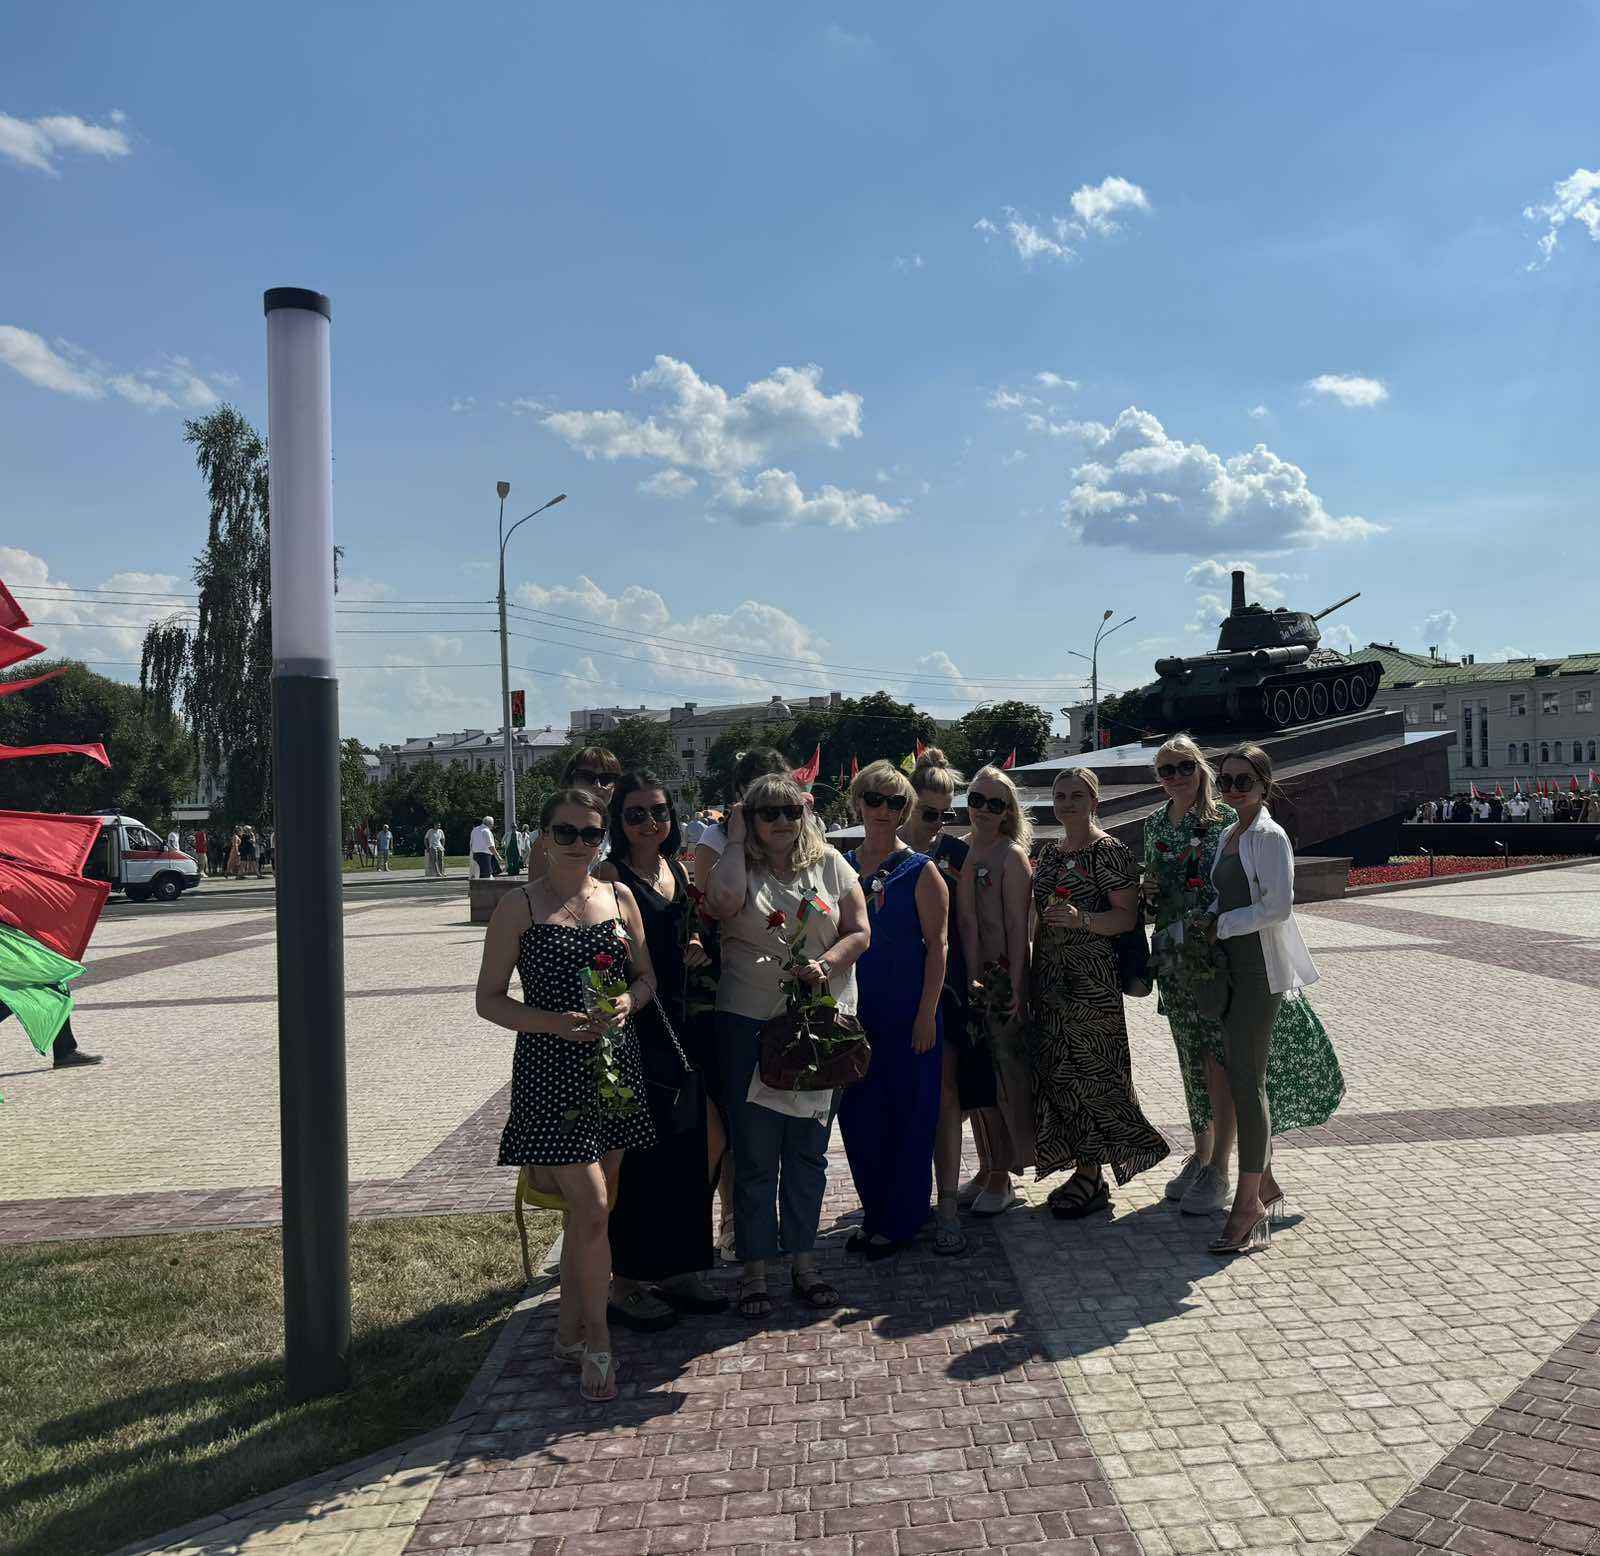 Работники, члены профсоюза ГУ «РНПЦ РМиЭЧ», приняли участие в открытии площади Восстания и памятного знака, посвященных Дню Независимости Республики Беларусь  и 80-й годовщине освобождения Беларуси от немецко-фашистских захватчиков